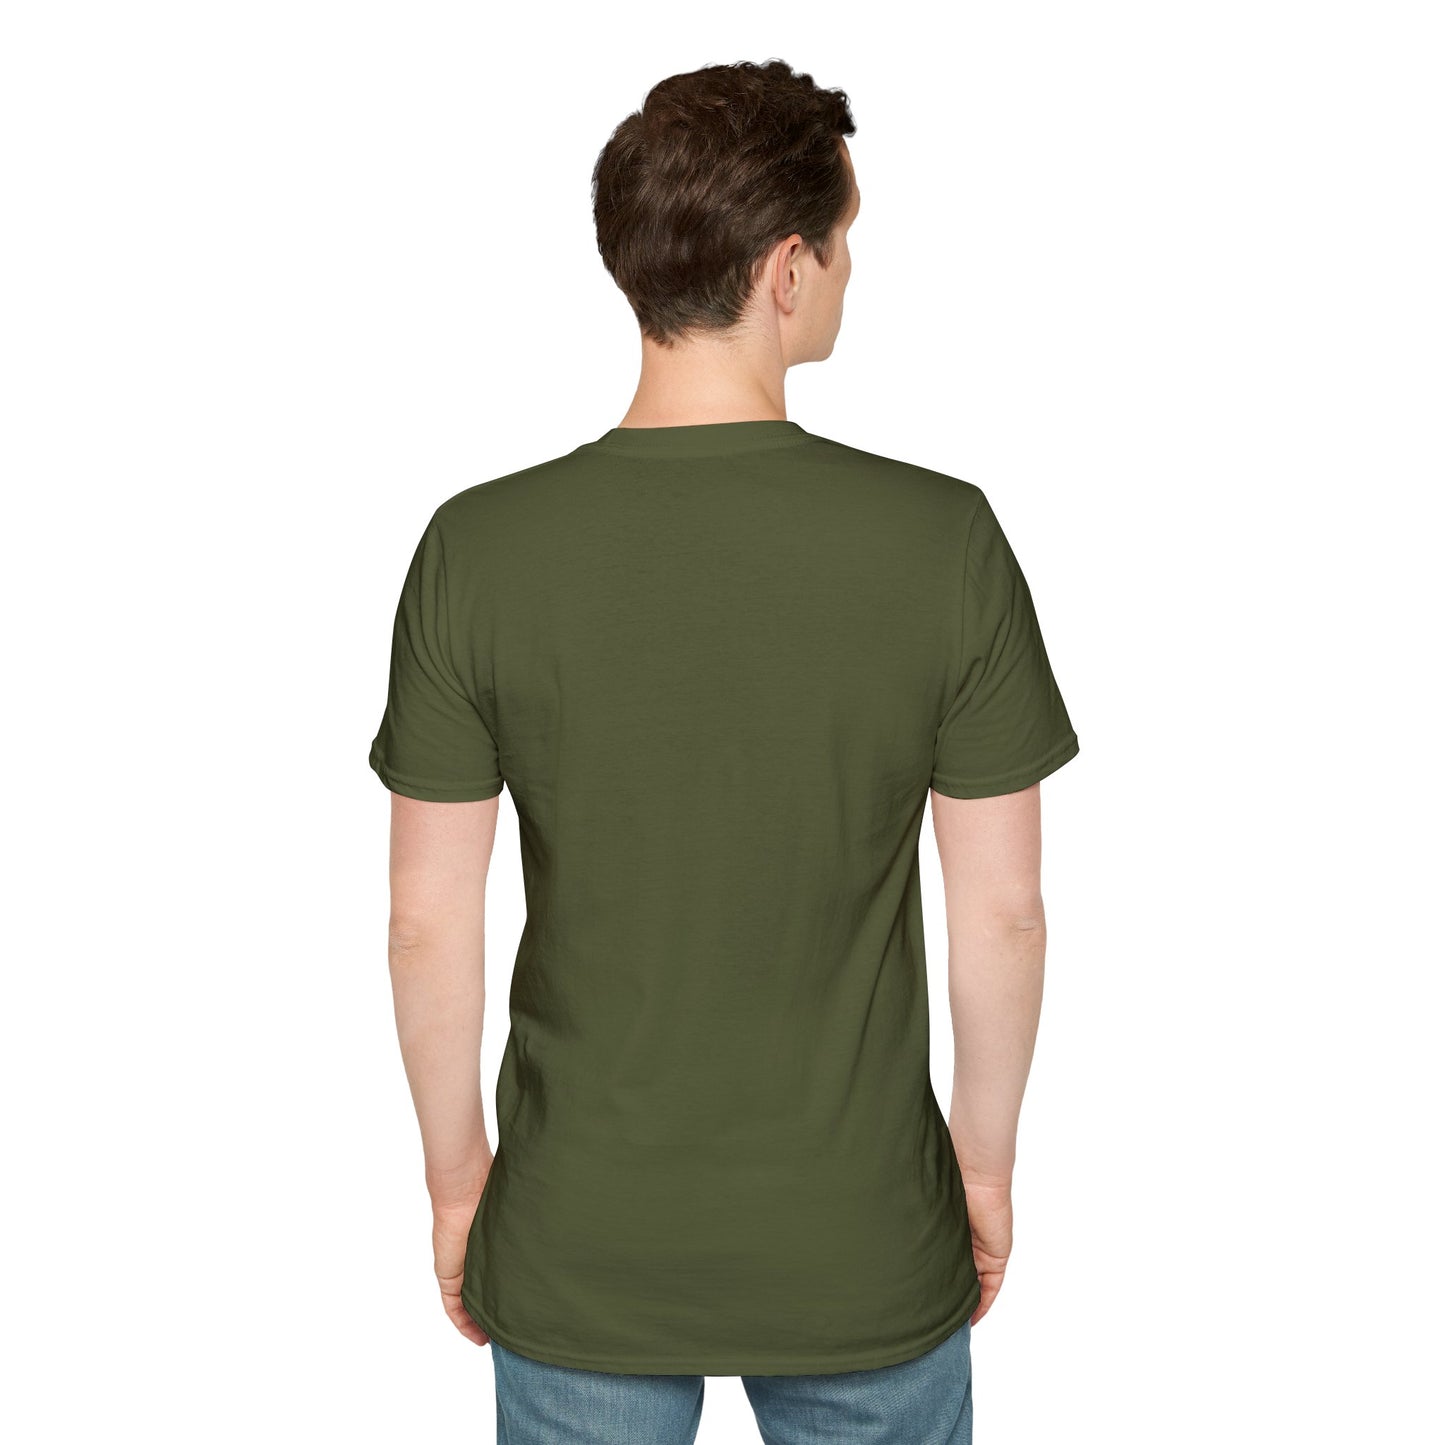 TG-25 Unisex Softstyle T-Shirt